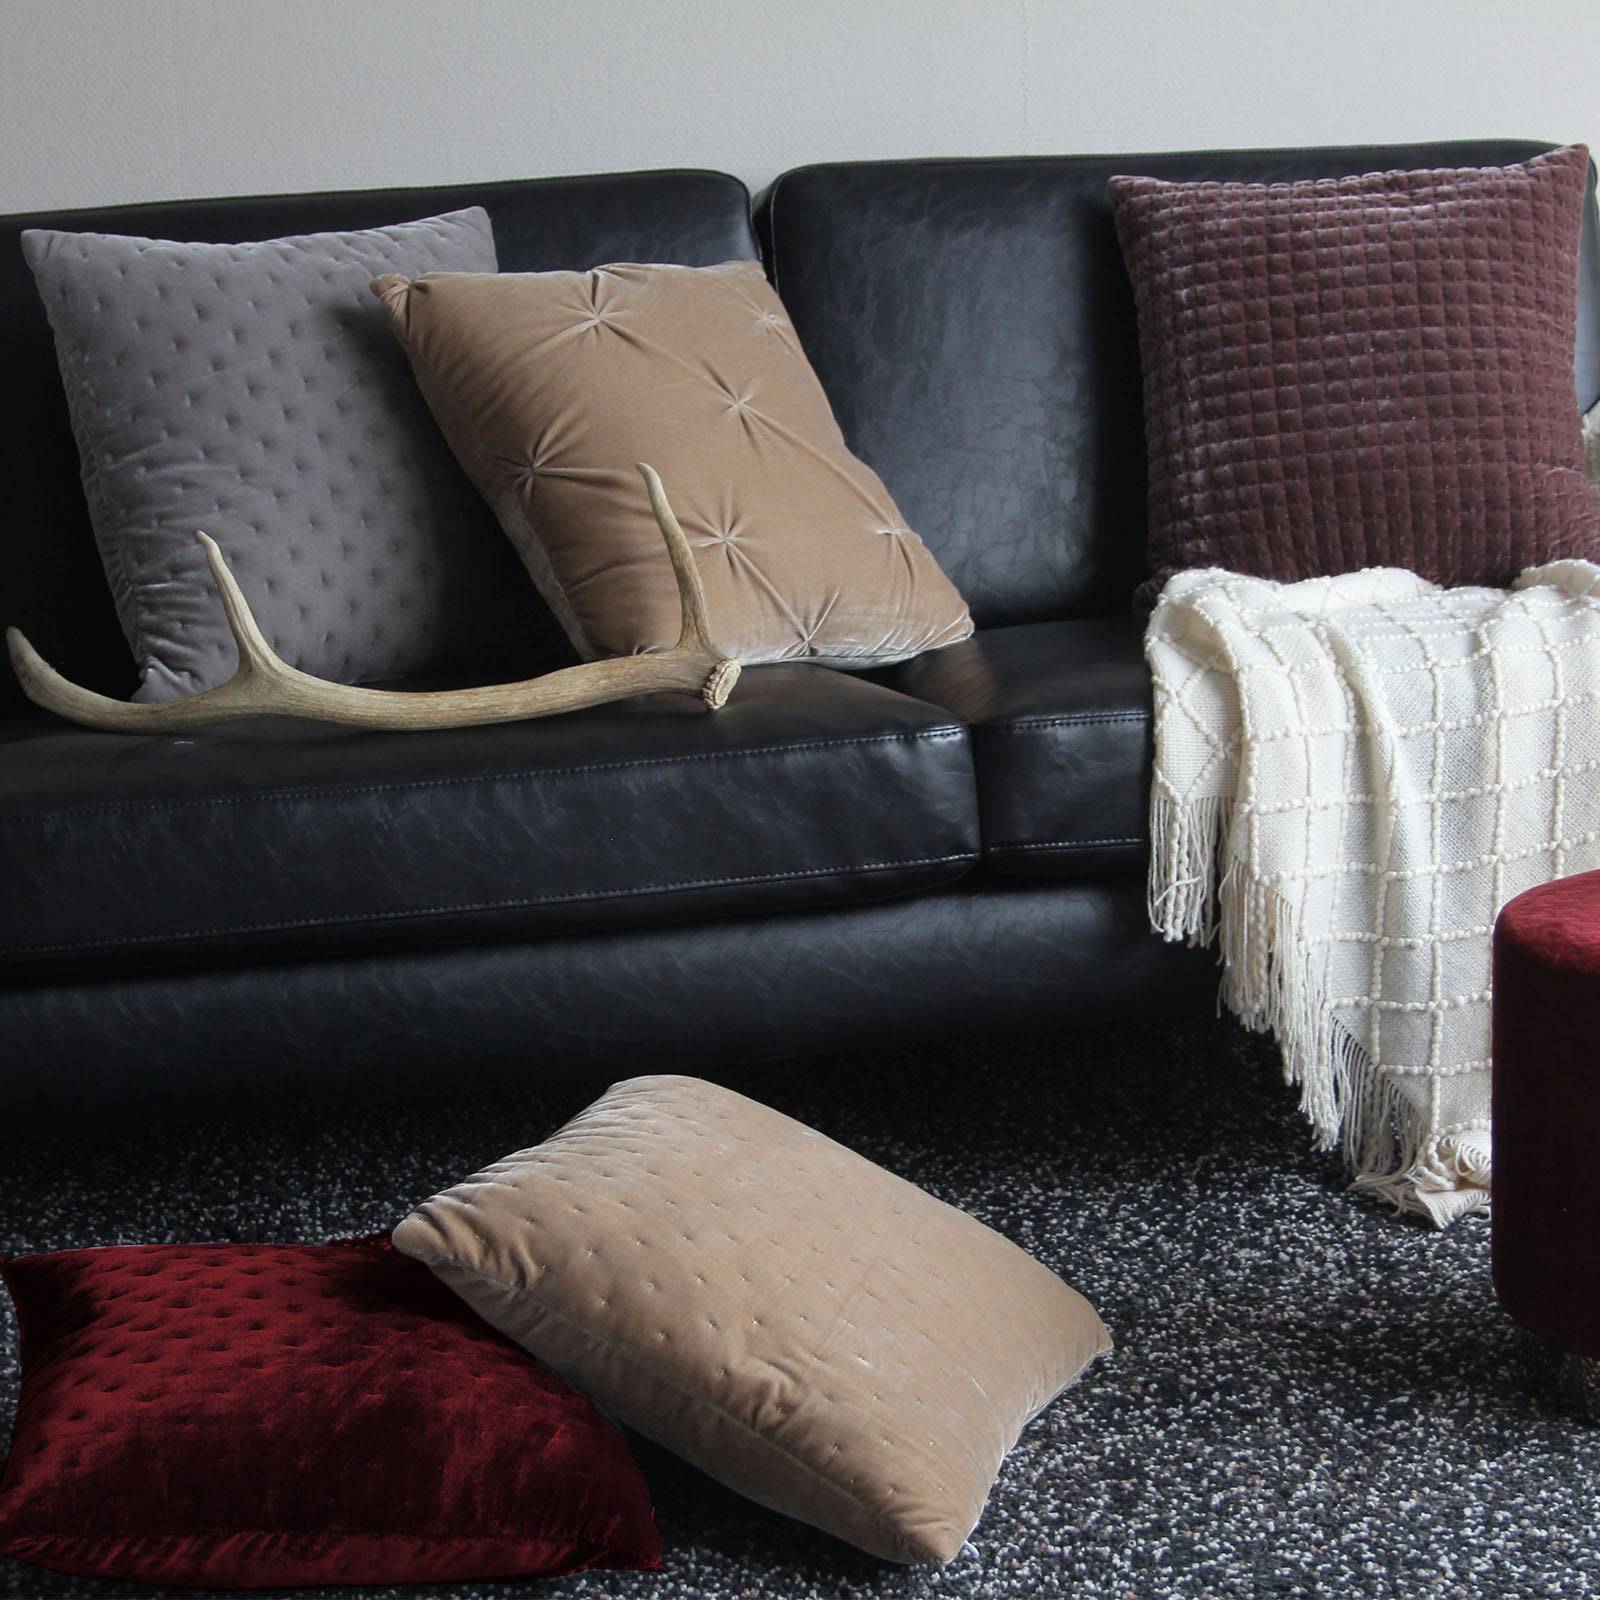 30X60 Cm Cushion Cover 2284-015 -  Cushions | 30X60 غطاء وسادة - ebarza Furniture UAE | Shop Modern Furniture in Abu Dhabi & Dubai - مفروشات ايبازرا في الامارات | تسوق اثاث عصري وديكورات مميزة في دبي وابوظبي